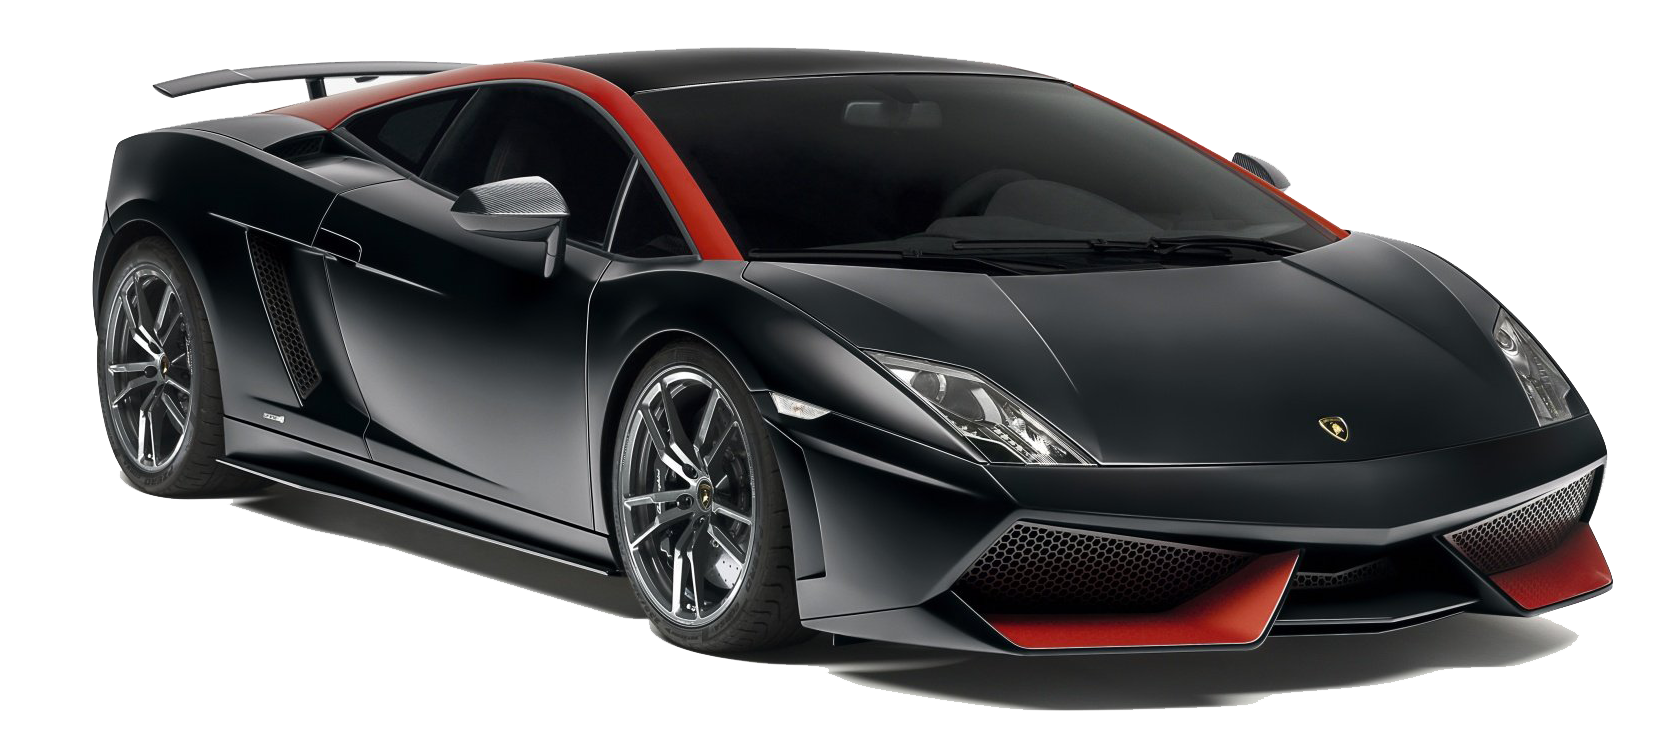 Imagen PNG gratis de Lamborghini